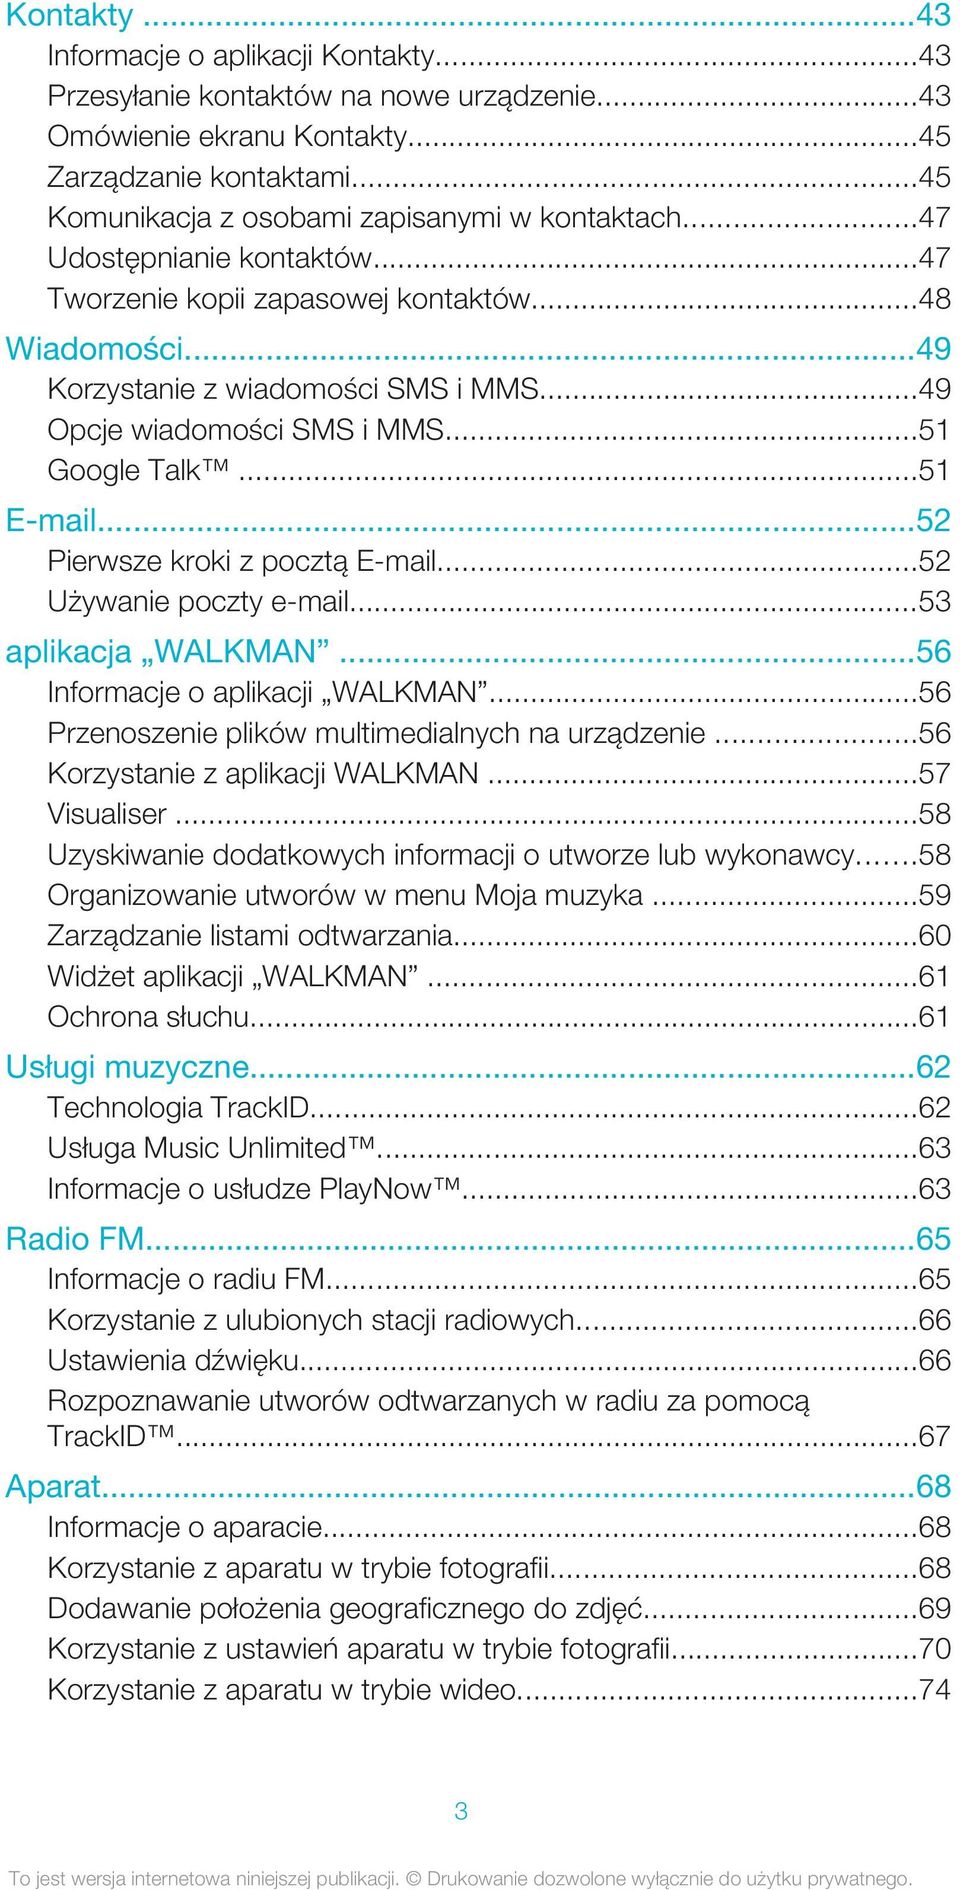 ..52 Pierwsze kroki z pocztą E-mail...52 Używanie poczty e-mail...53 aplikacja WALKMAN...56 Informacje o aplikacji WALKMAN...56 Przenoszenie plików multimedialnych na urządzenie.